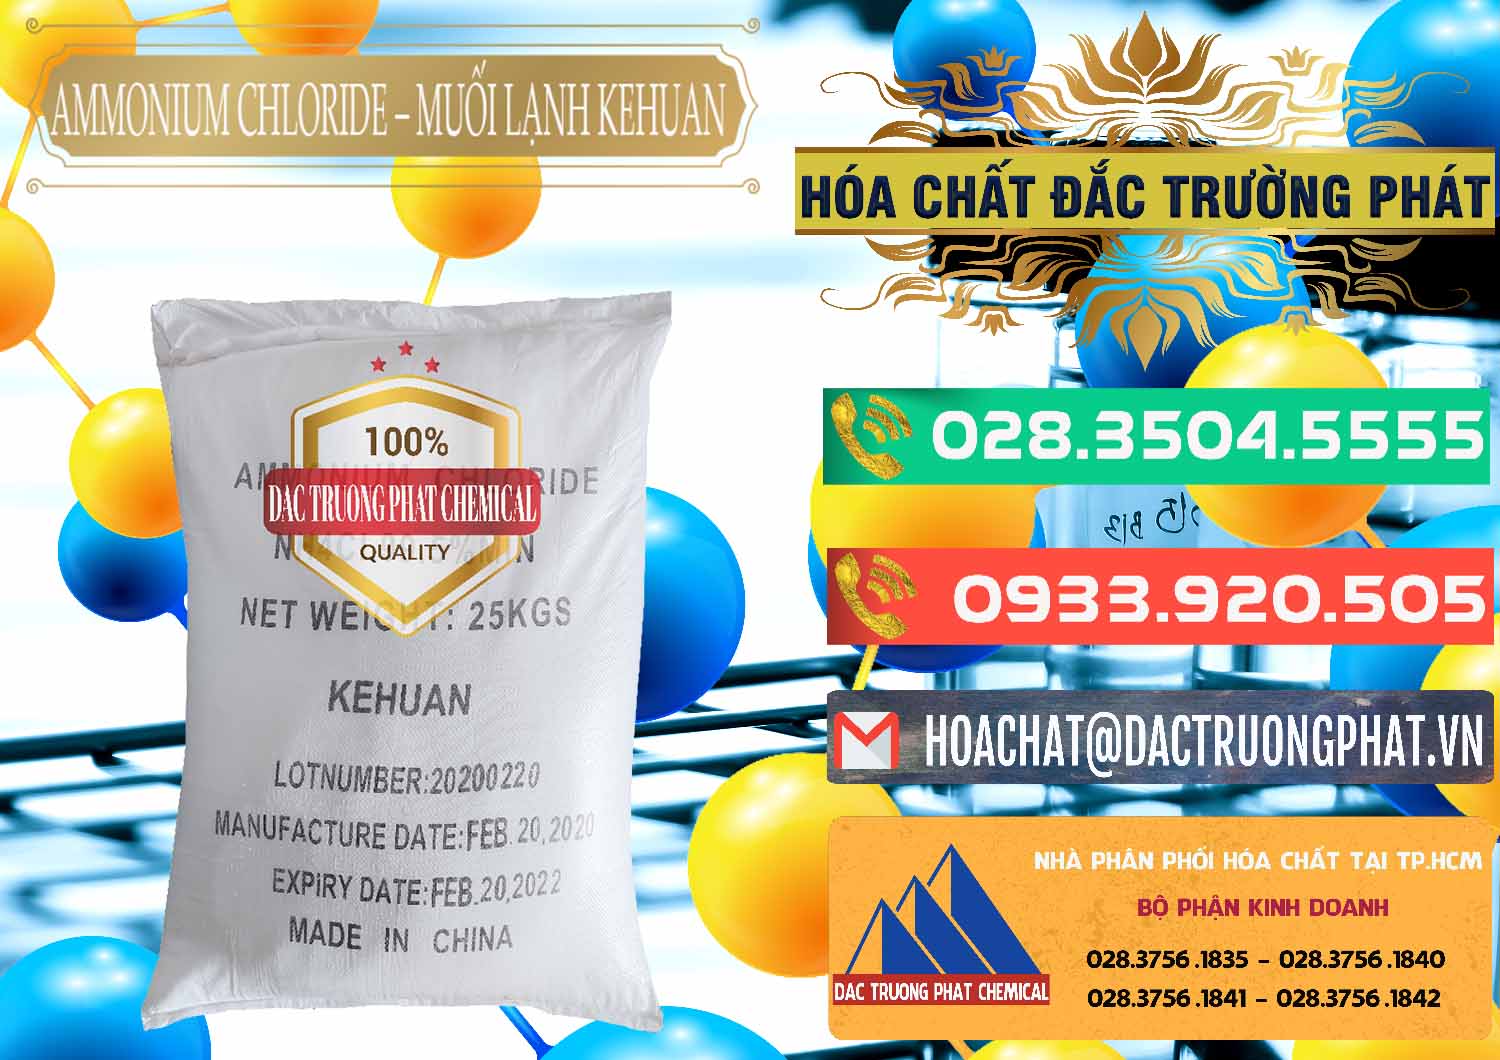 Nơi chuyên bán - phân phối Ammonium Chloride – NH4CL Muối Lạnh Kehuan Trung Quốc China - 0022 - Nơi cung cấp & nhập khẩu hóa chất tại TP.HCM - congtyhoachat.com.vn